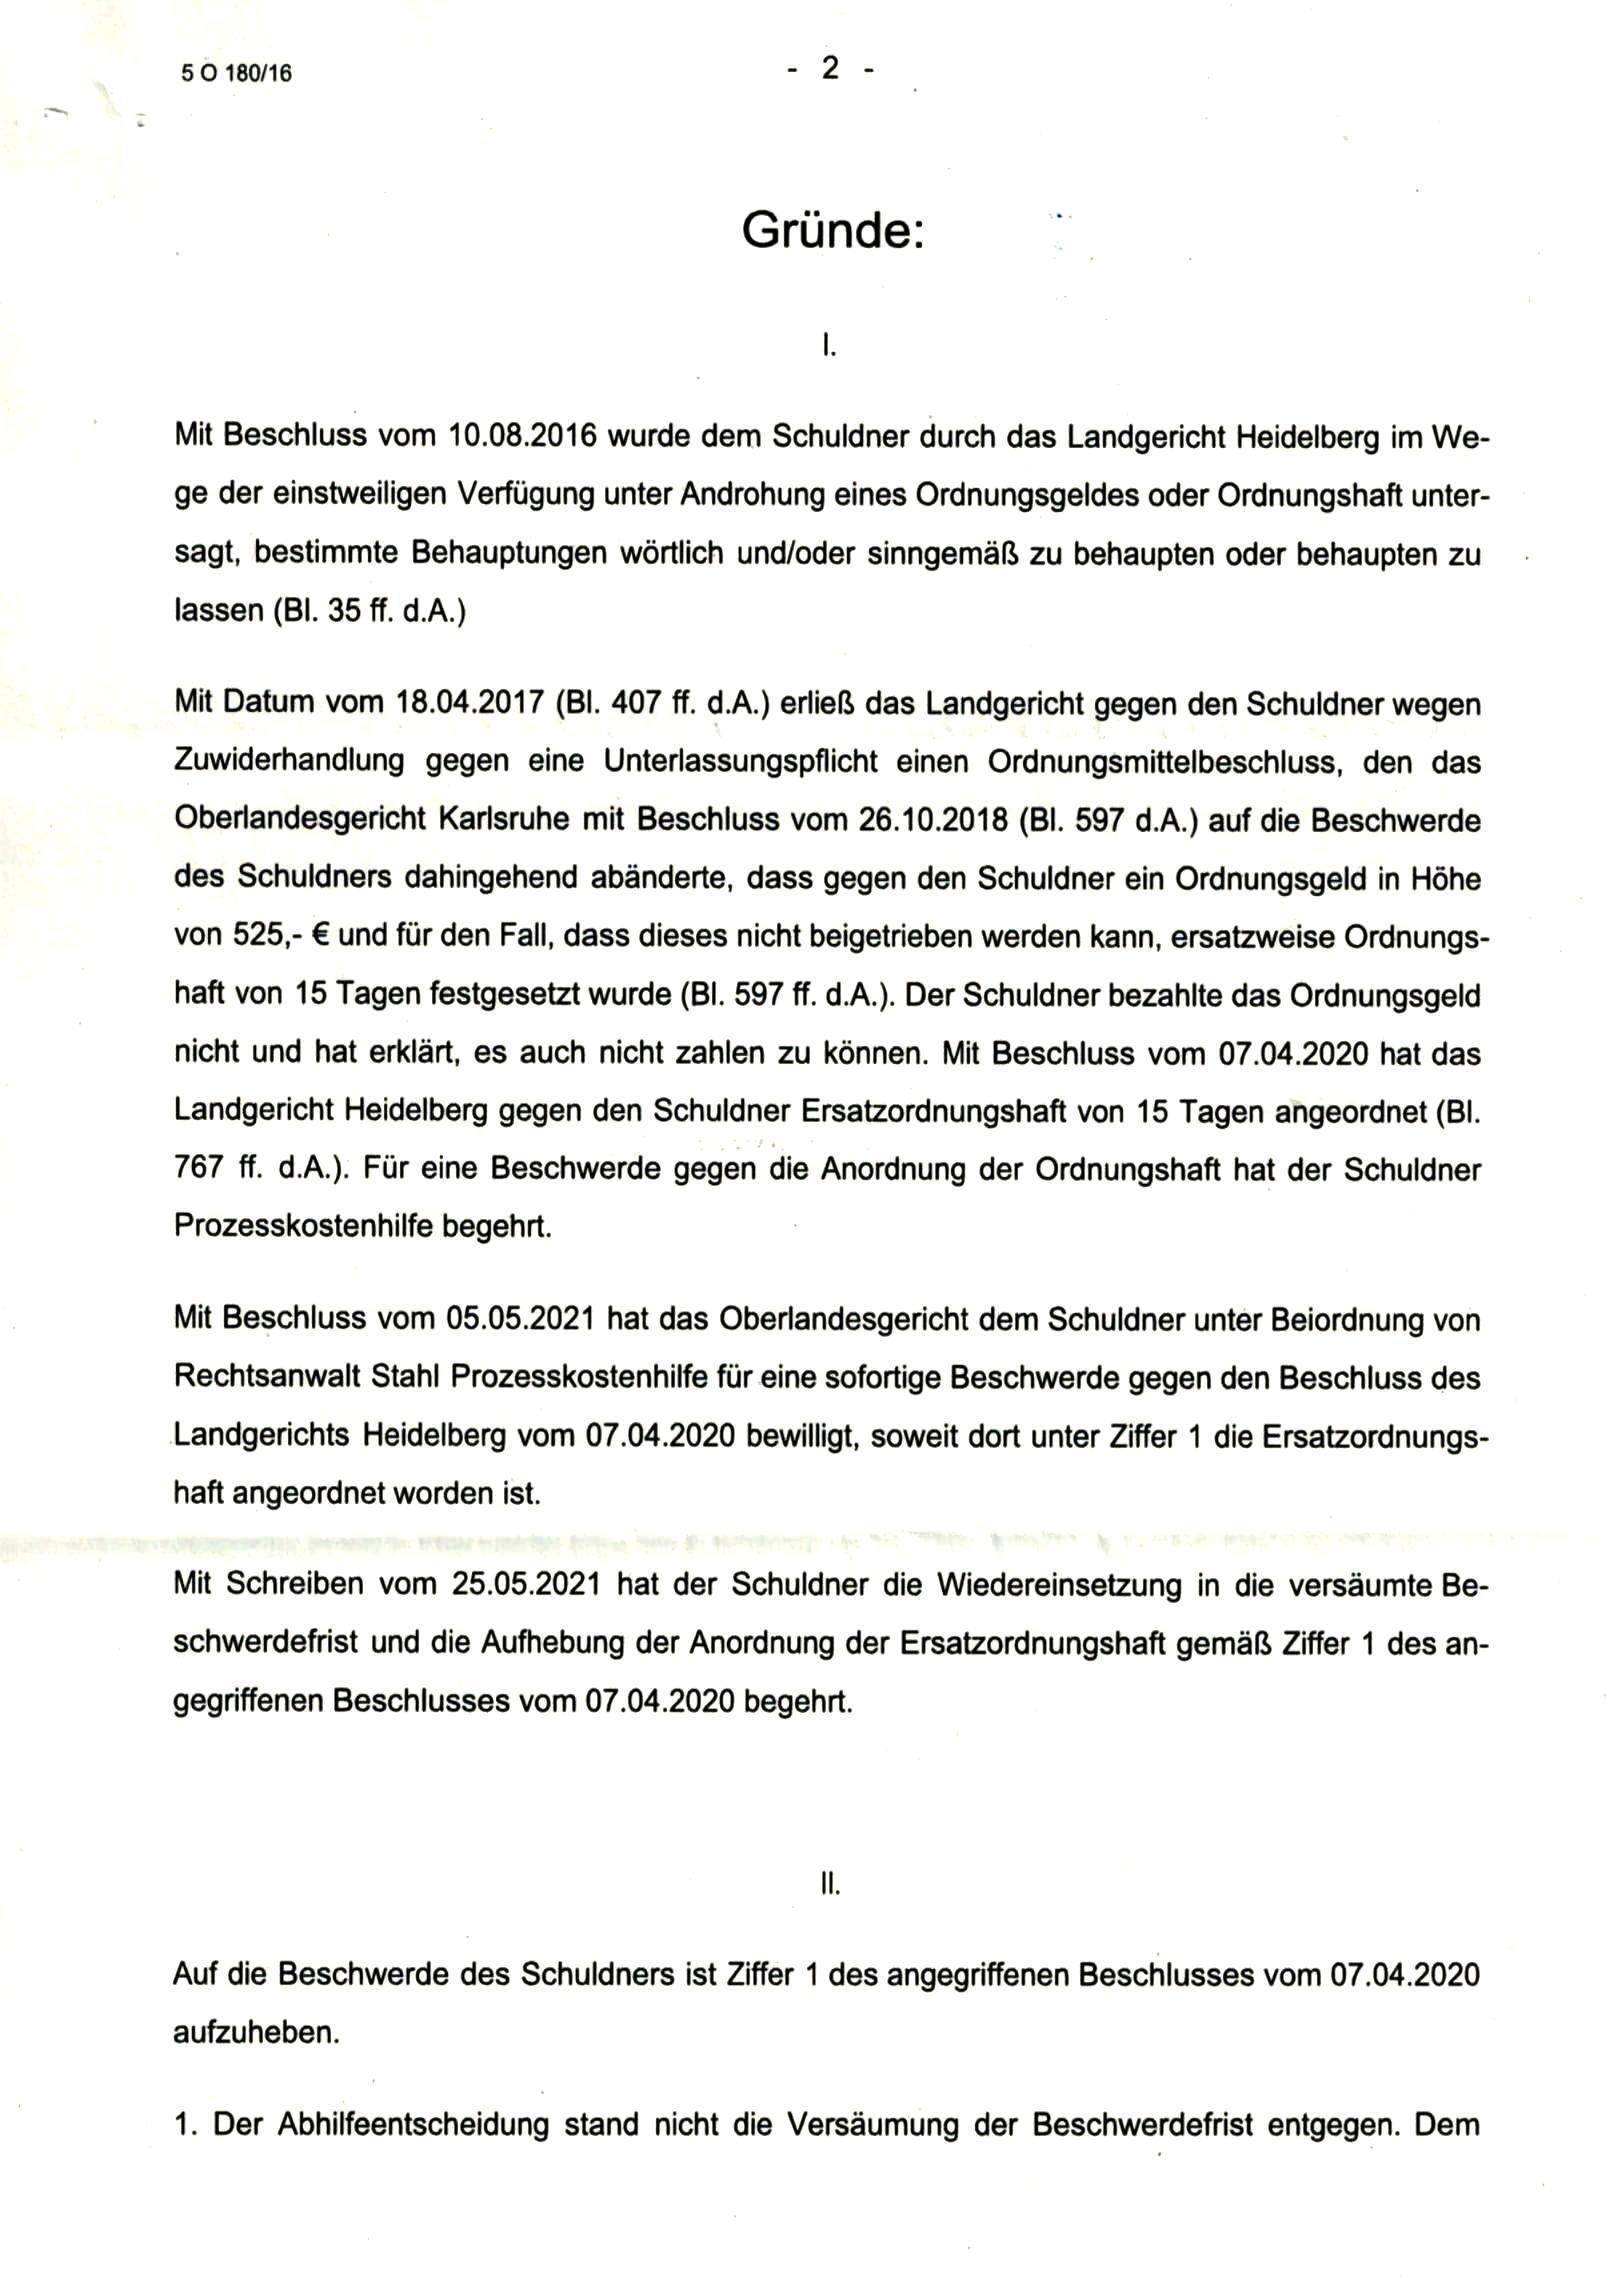 Beschluss 5 O 180/16 des Landgericht Heidelberg vom 05.01.2022, Seite 2